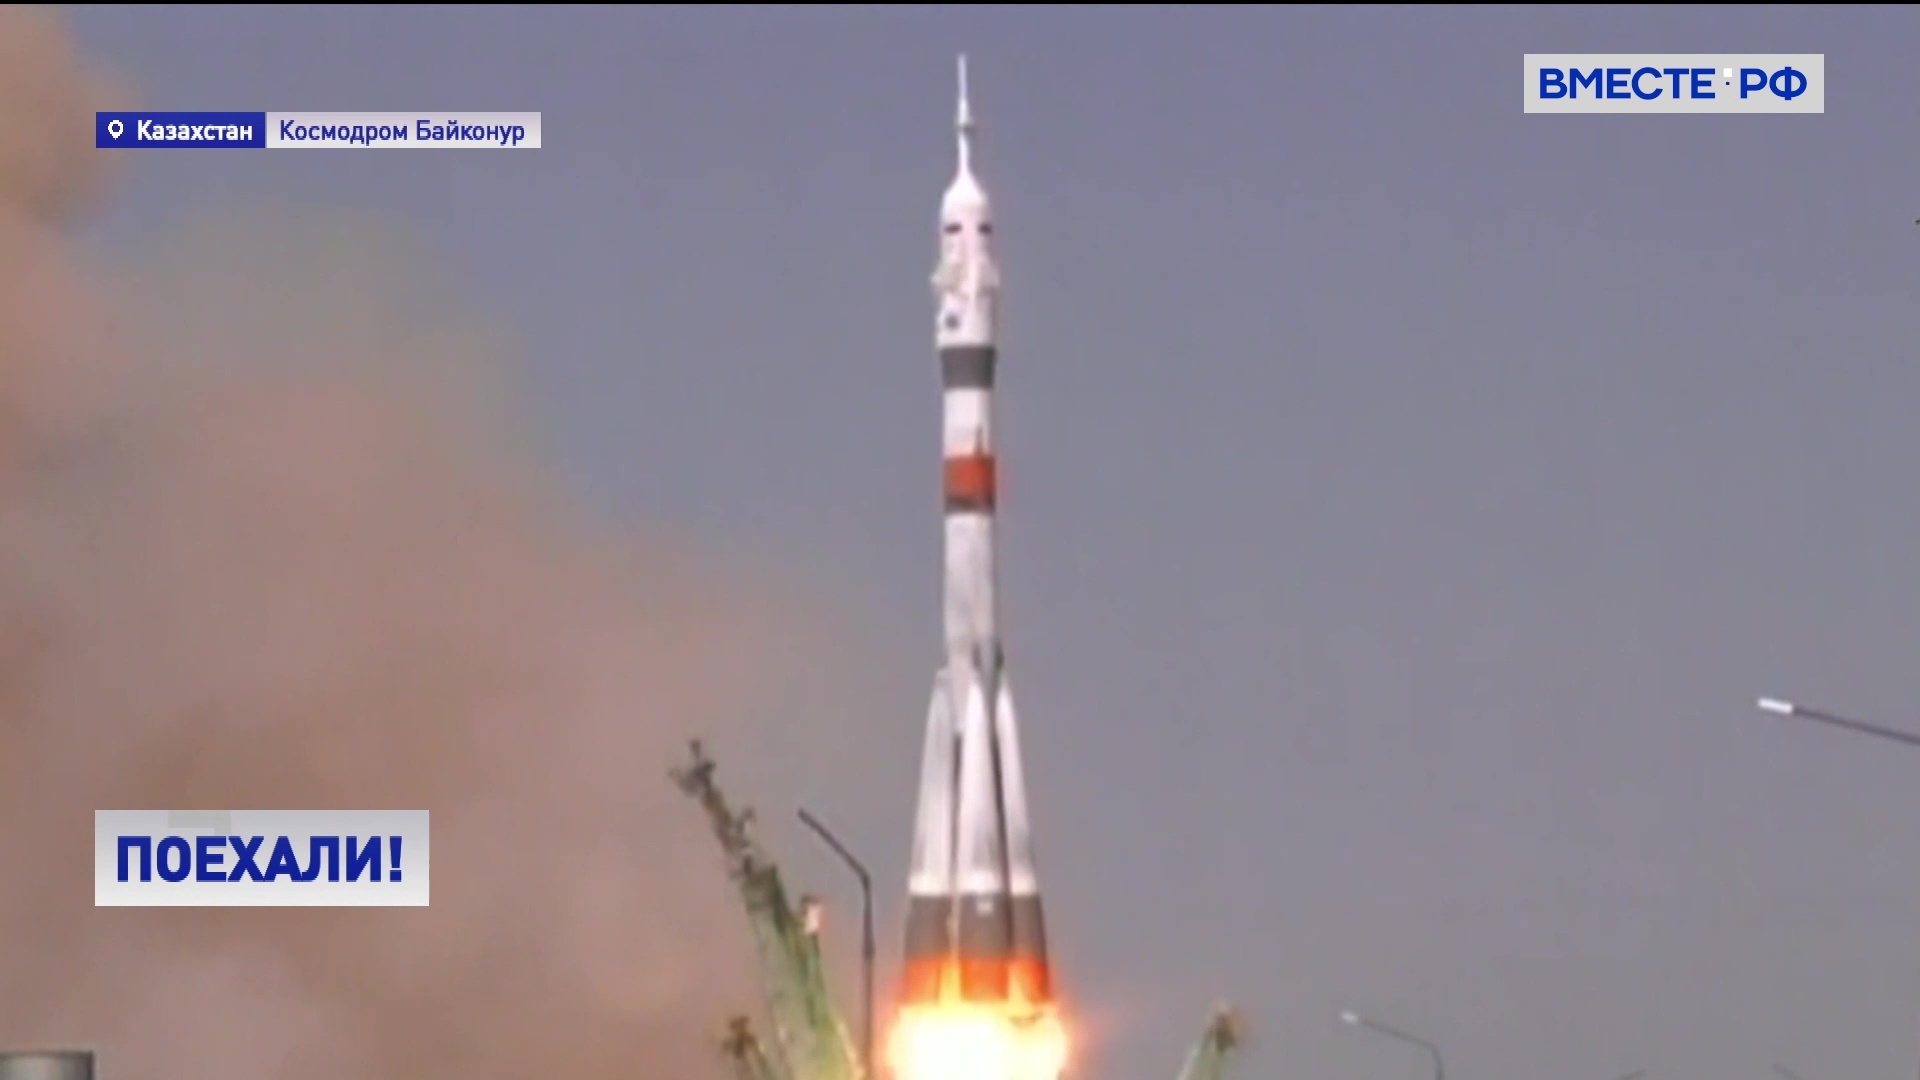 Запуск ракеты сегодня с космодрома байконур. Ракета Юрия Гагарина Восток-1. Космодром Байконур Восток 1. Пуск ракеты Восток 1.